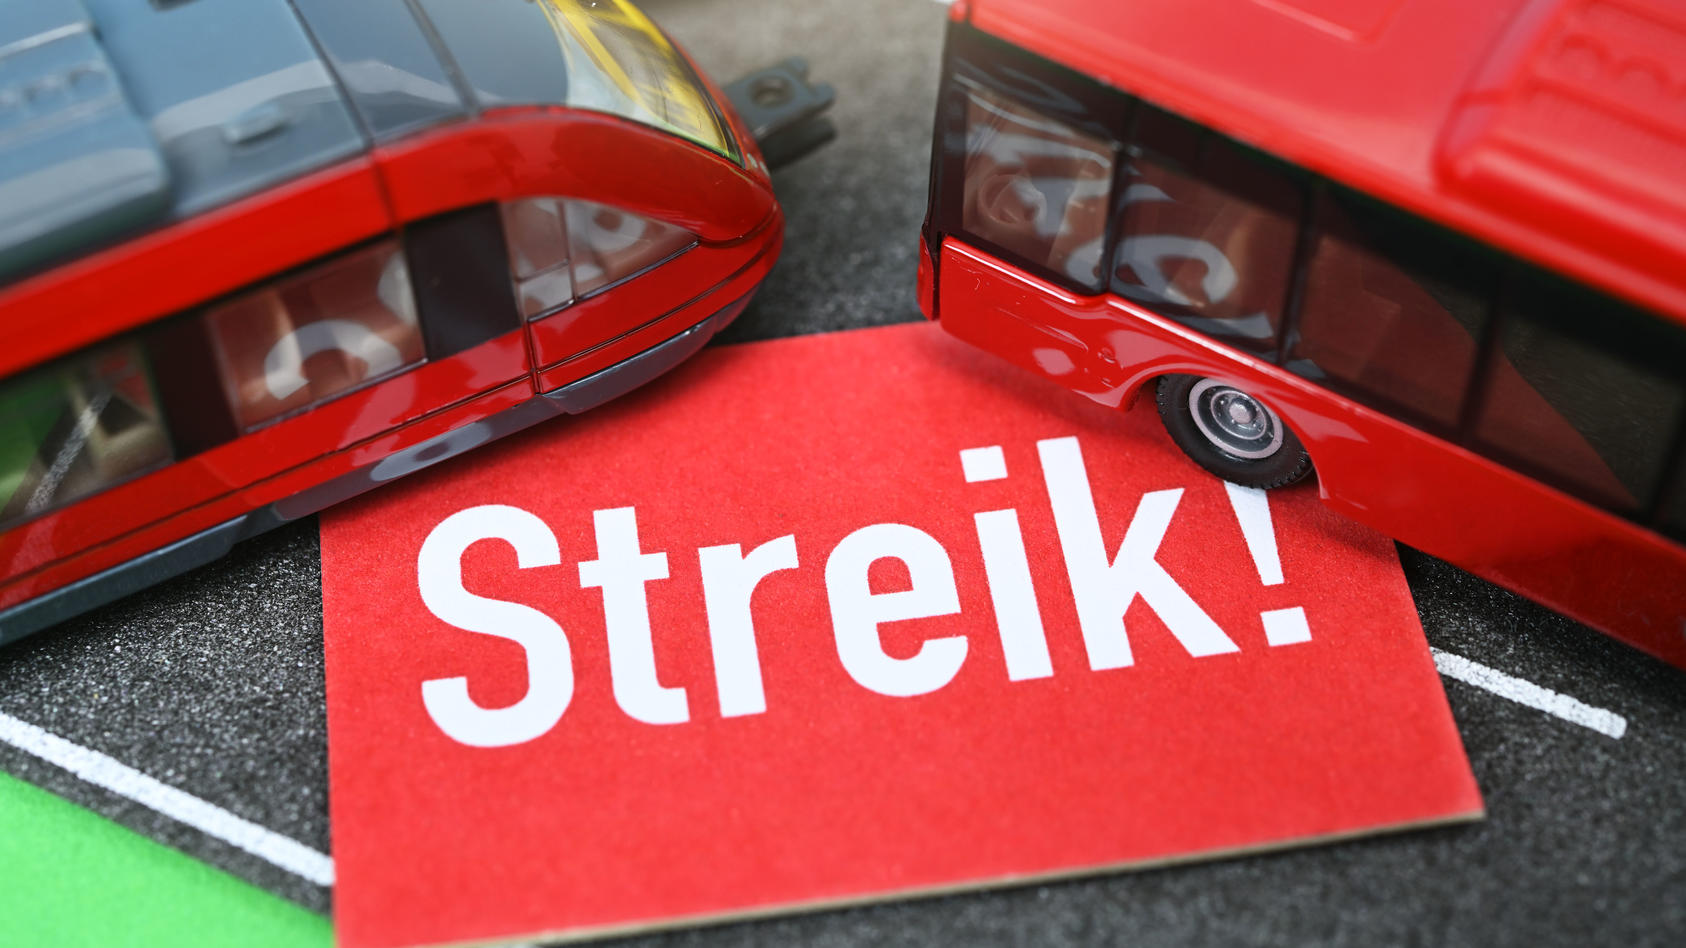 Minitaturen von Bus und Bahn mit einem Streik-Schild, Streik im ÖPNV / action press